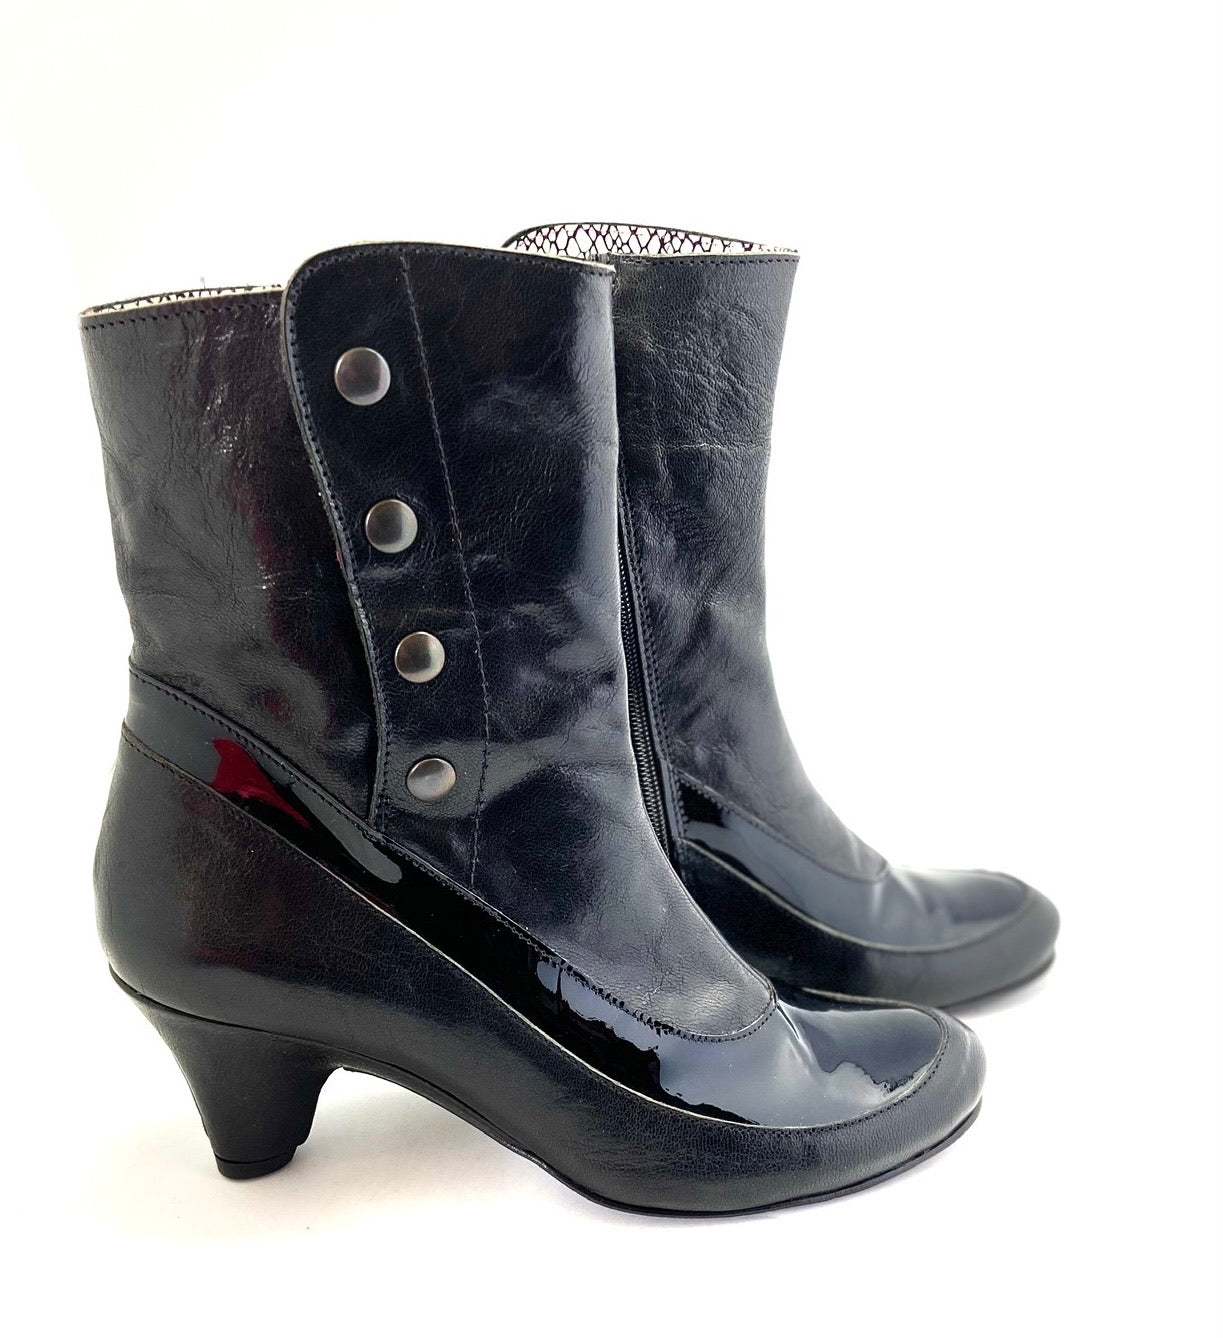 La Vie - Black boot